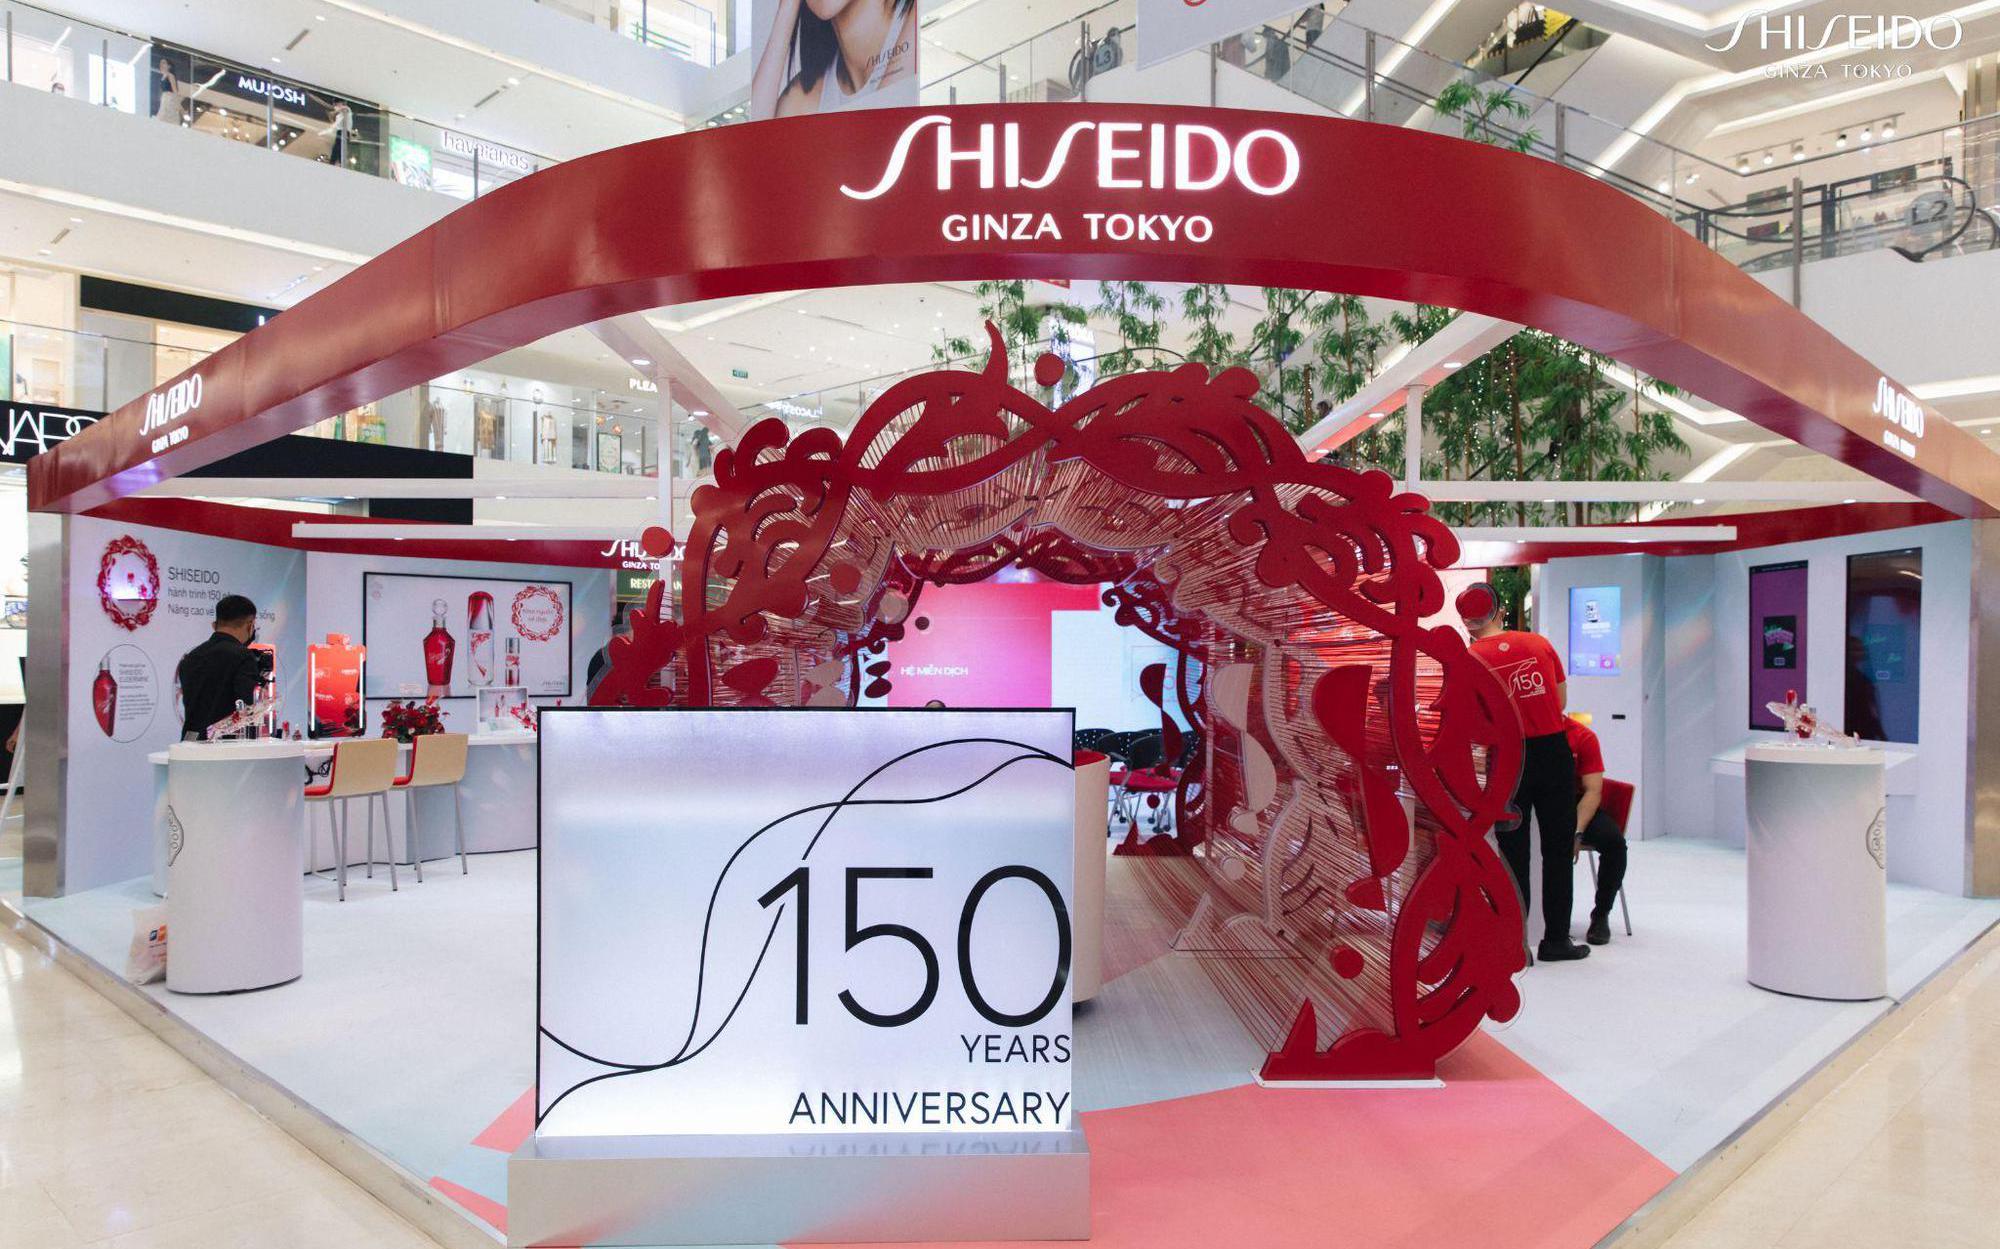 Kỷ niệm 150 năm thành lập, thương hiệu mỹ phẩm cao cấp hàng đầu Nhật Bản ra mắt dòng sản phẩm giới hạn